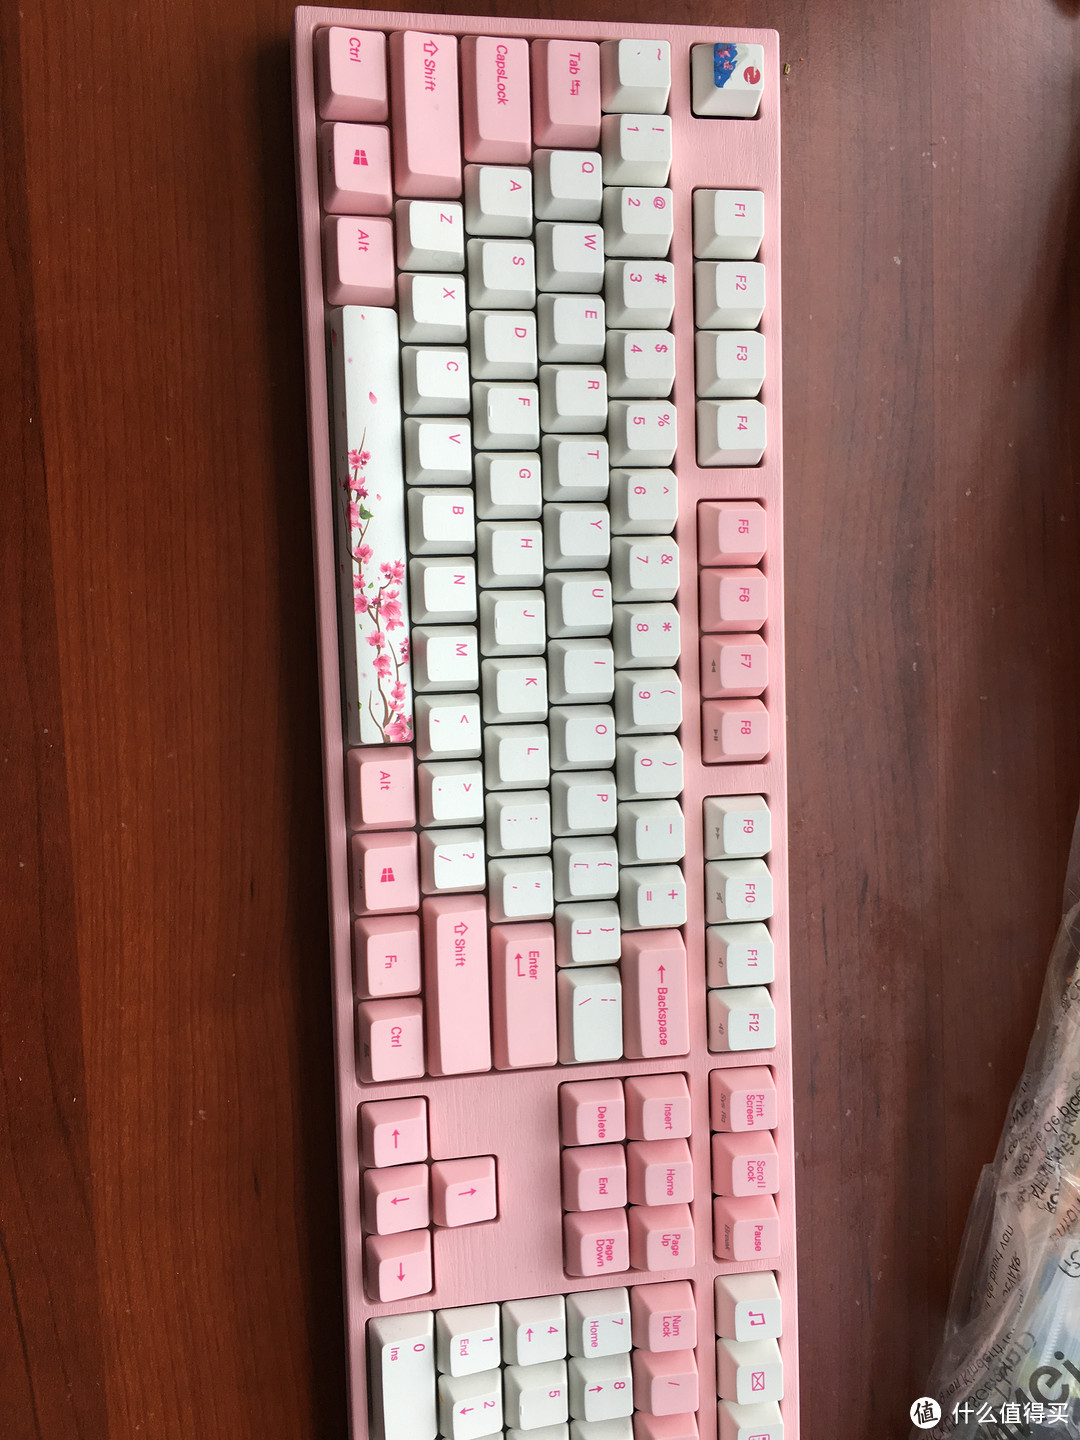 樱花被我出了，换色本位键盘